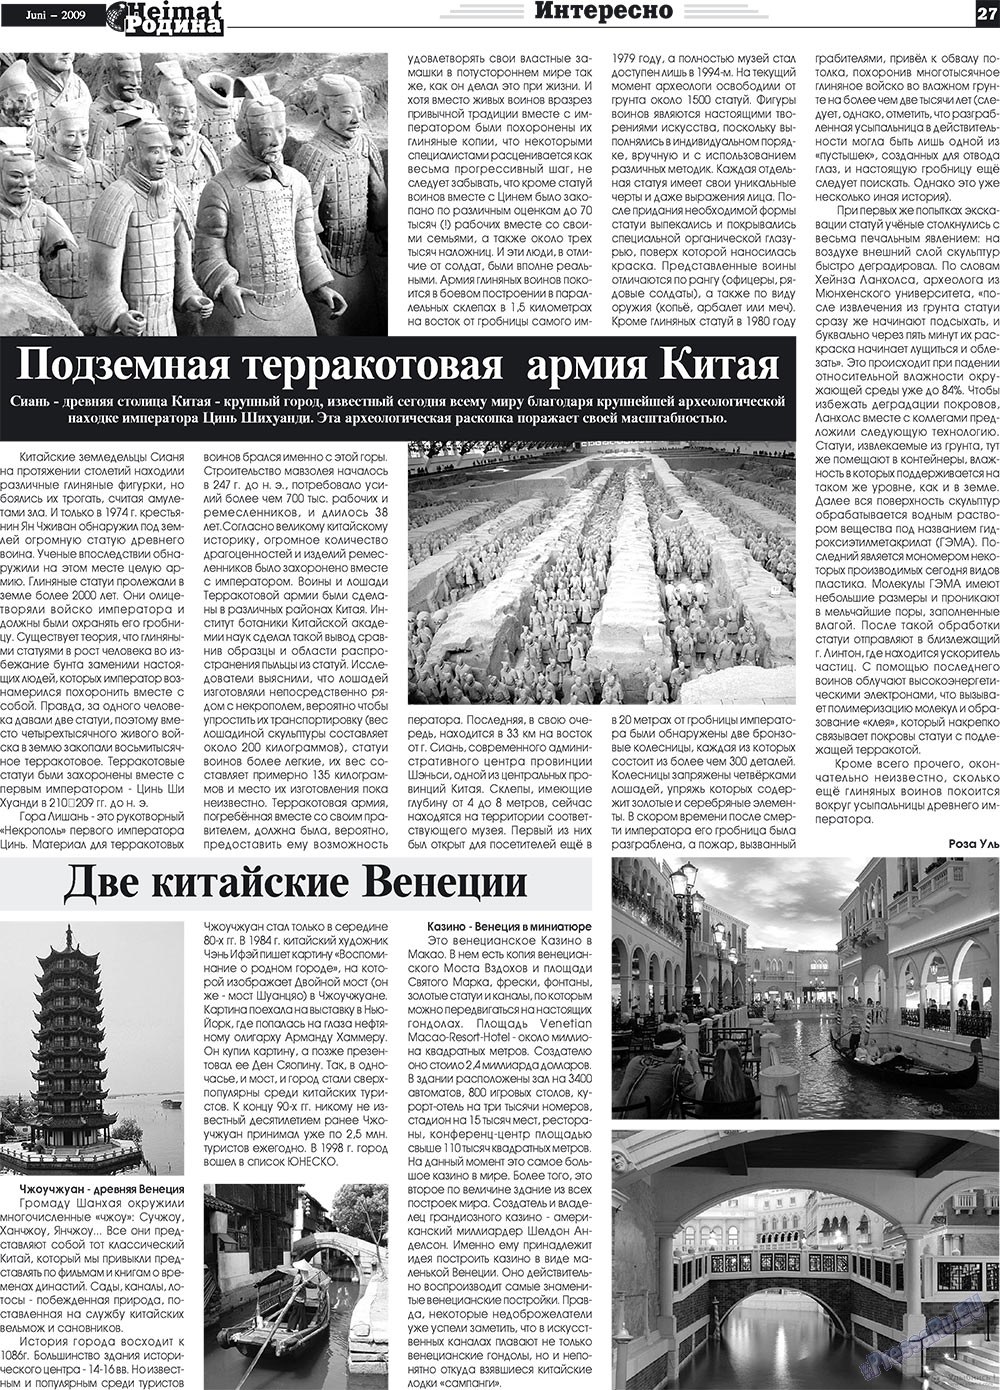 Heimat-Родина (газета). 2009 год, номер 6, стр. 27